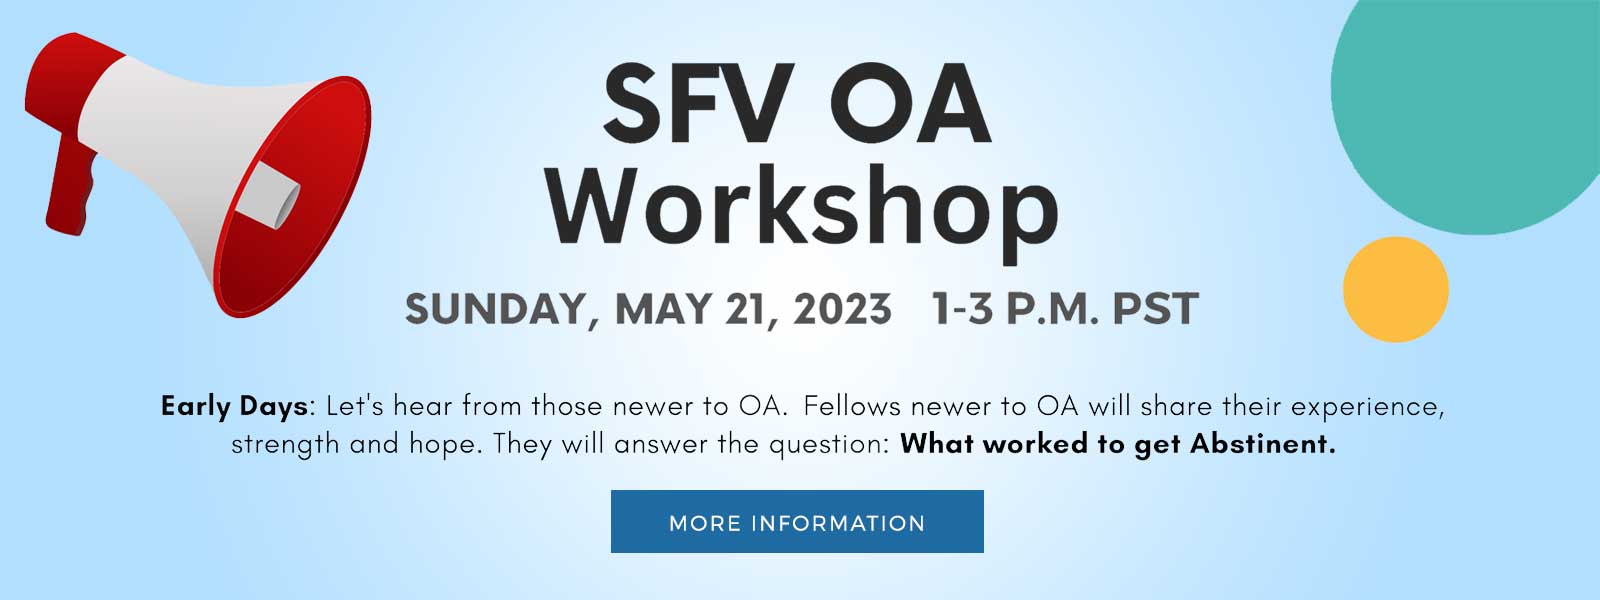 SFV OA Workshop Sunday, May 21, 2023 at 1-3pm